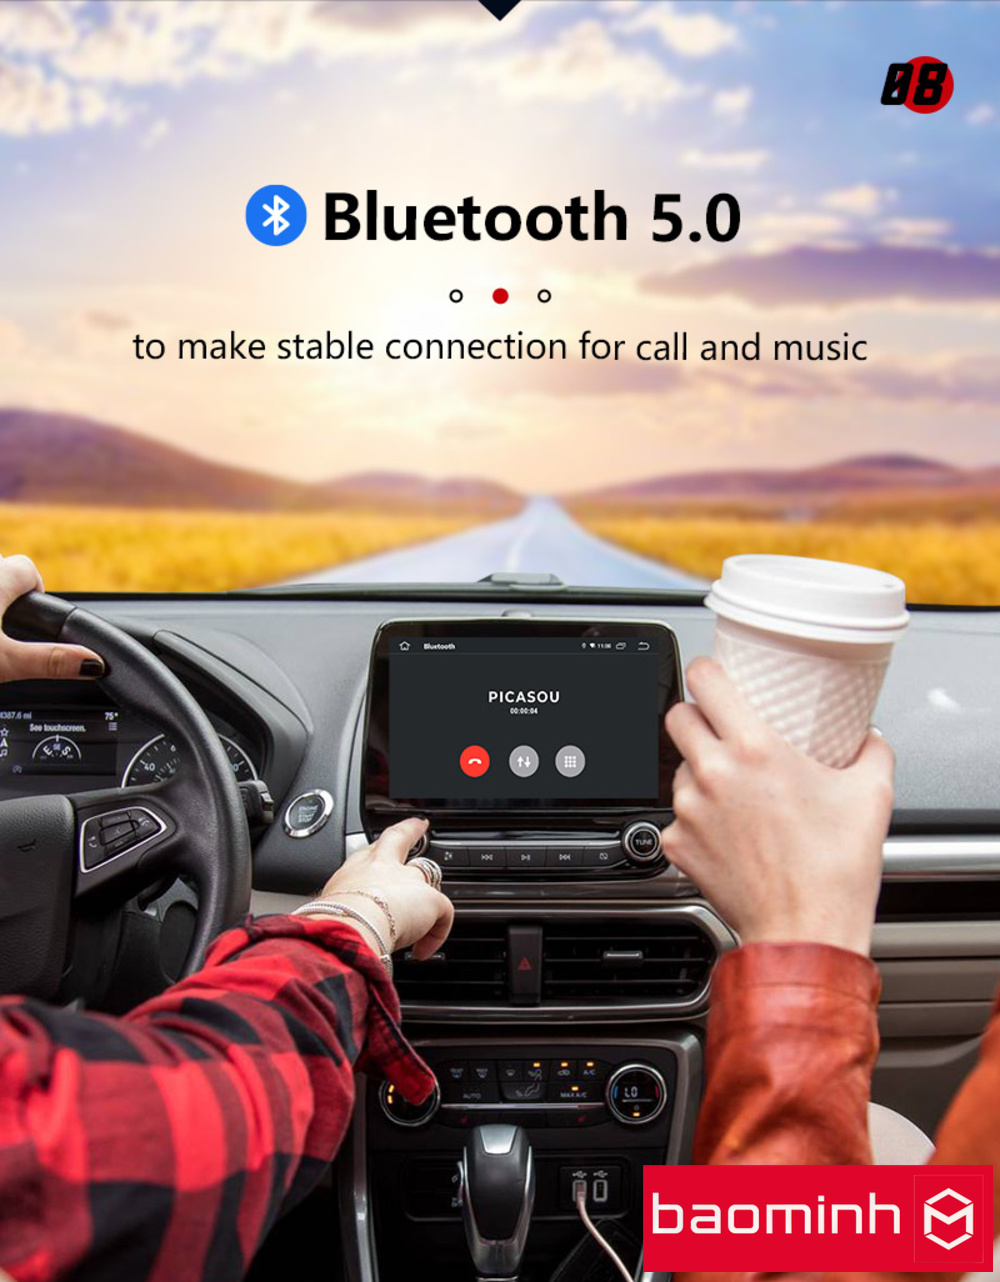 Thiết bị carplay android box AI KIMI Picasou S31 được trang bị Bluetooth 2 dải tần phổ biến hiện nay là 4.0 và 5.0 nhằm đảm bảo có thể kết nối tốt với hầu hết các thiết bị ngoại vi như điện thoại, chuột, bàn phím...